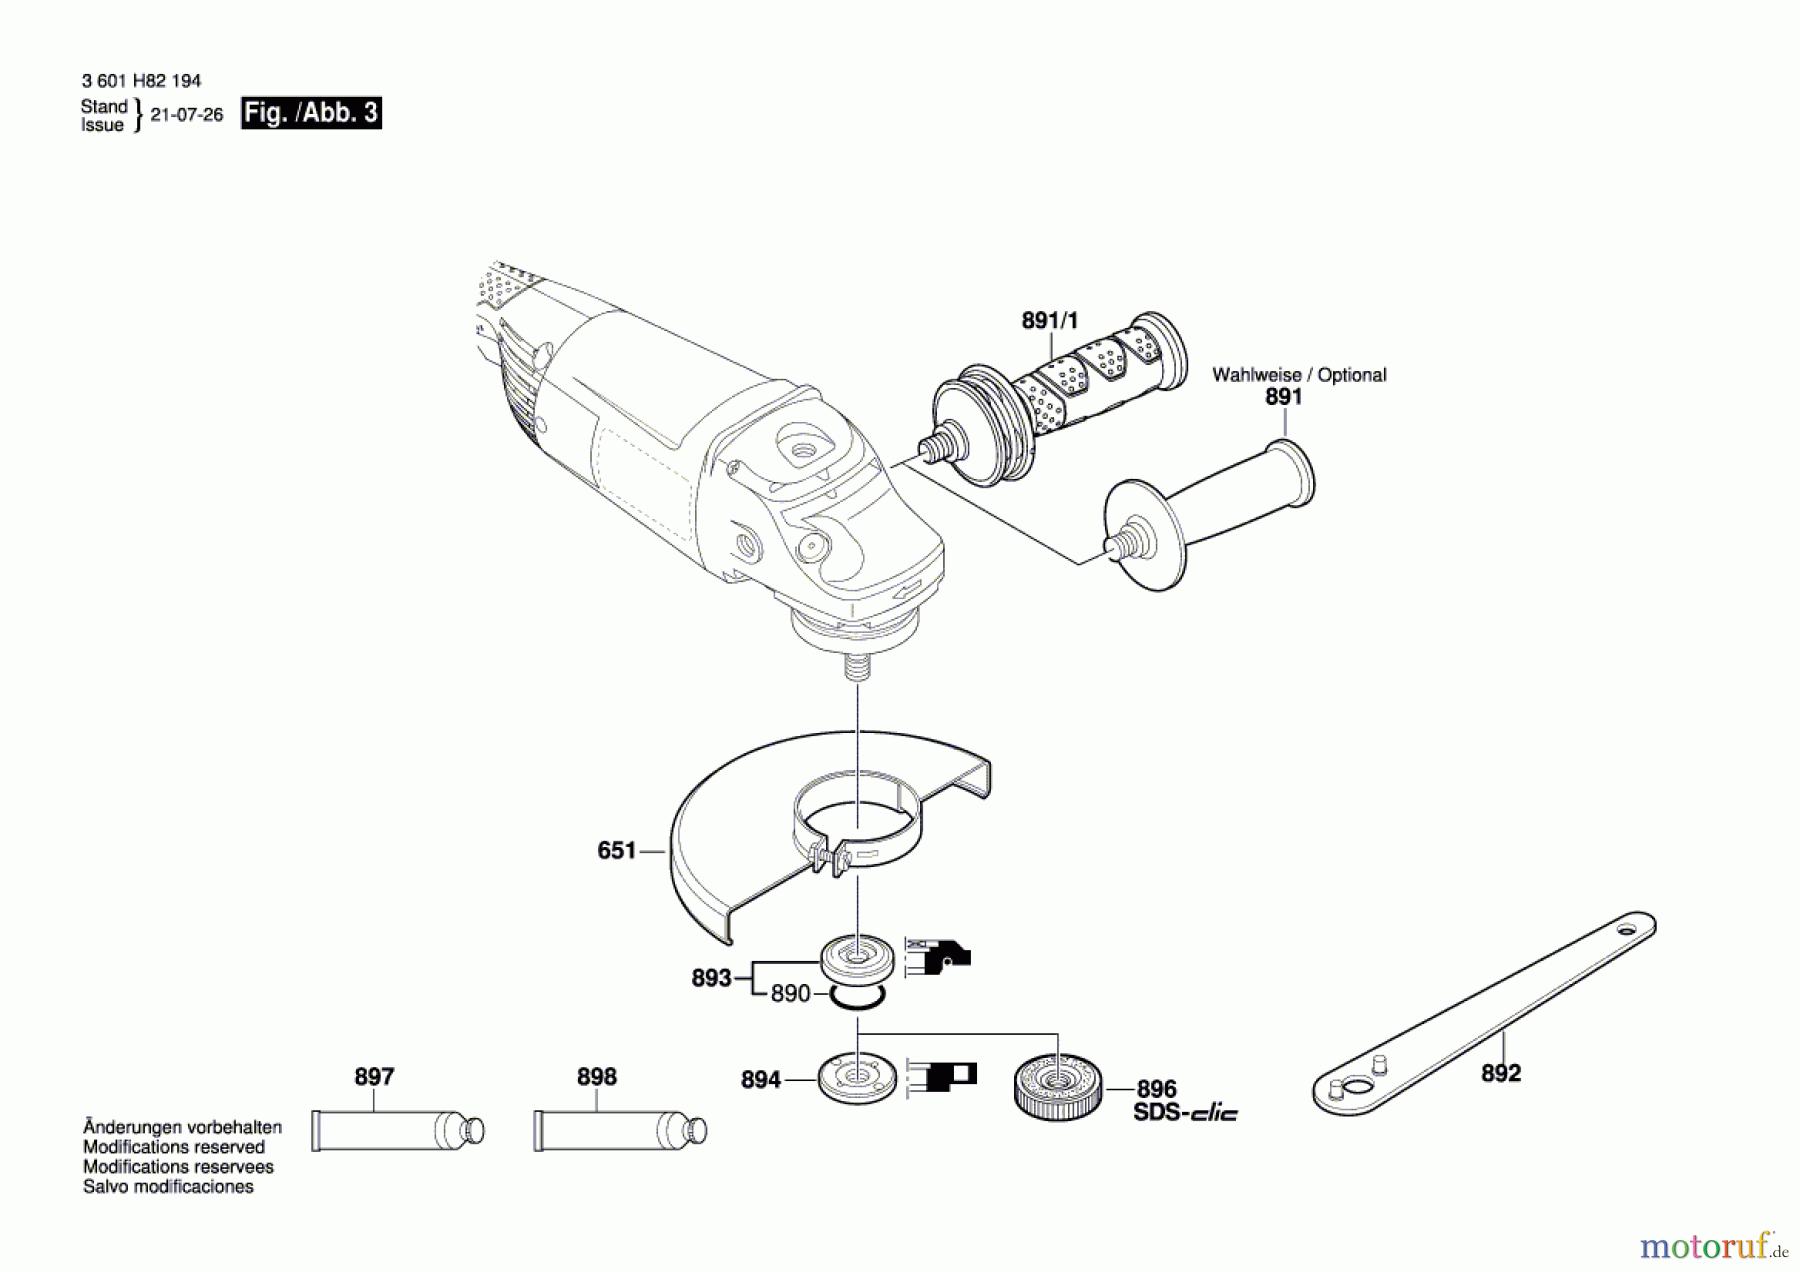  Bosch Werkzeug Winkelschleifer GWS 22-230 H Seite 3